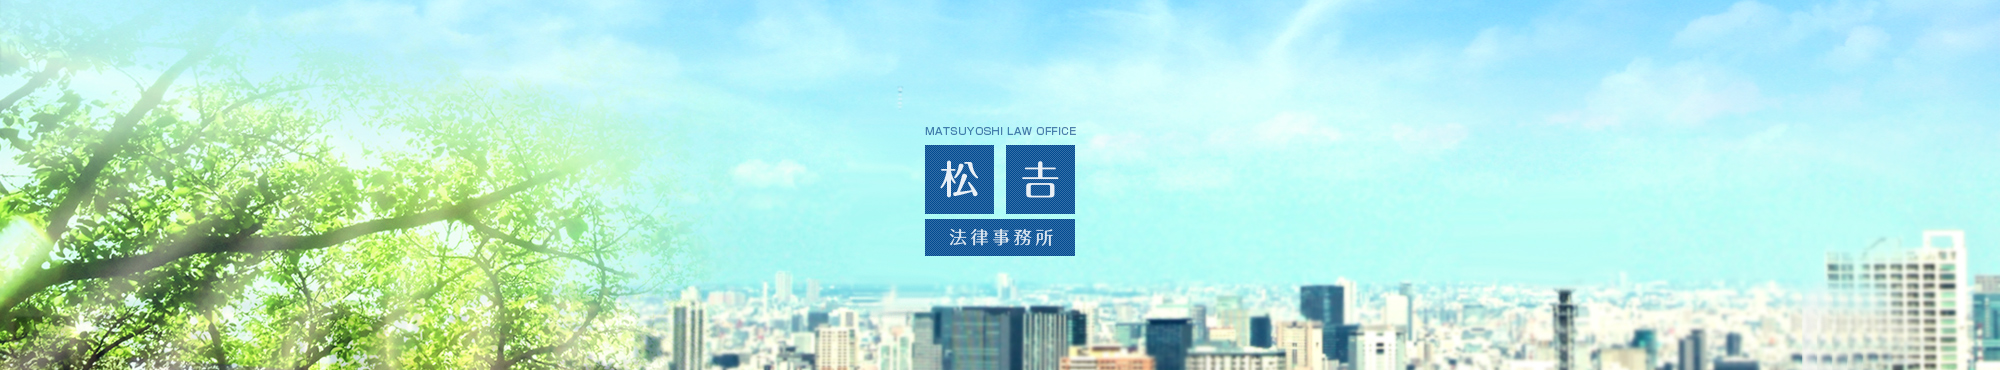 松吉法律事務所 MATSUYOSHI LAW OFFICE